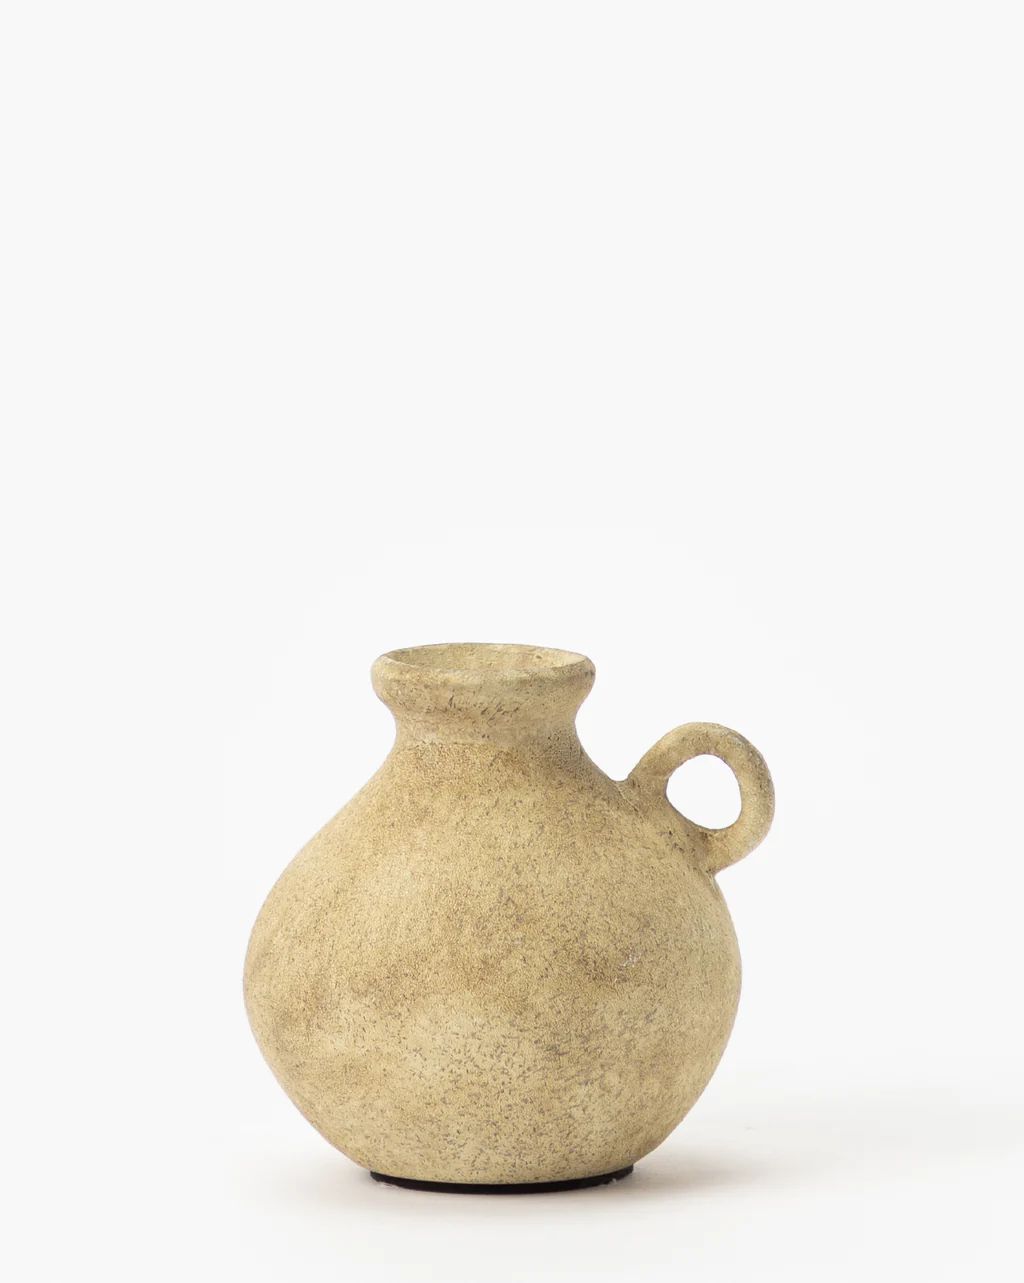 Ceramic Handled Bud Vase | McGee & Co.